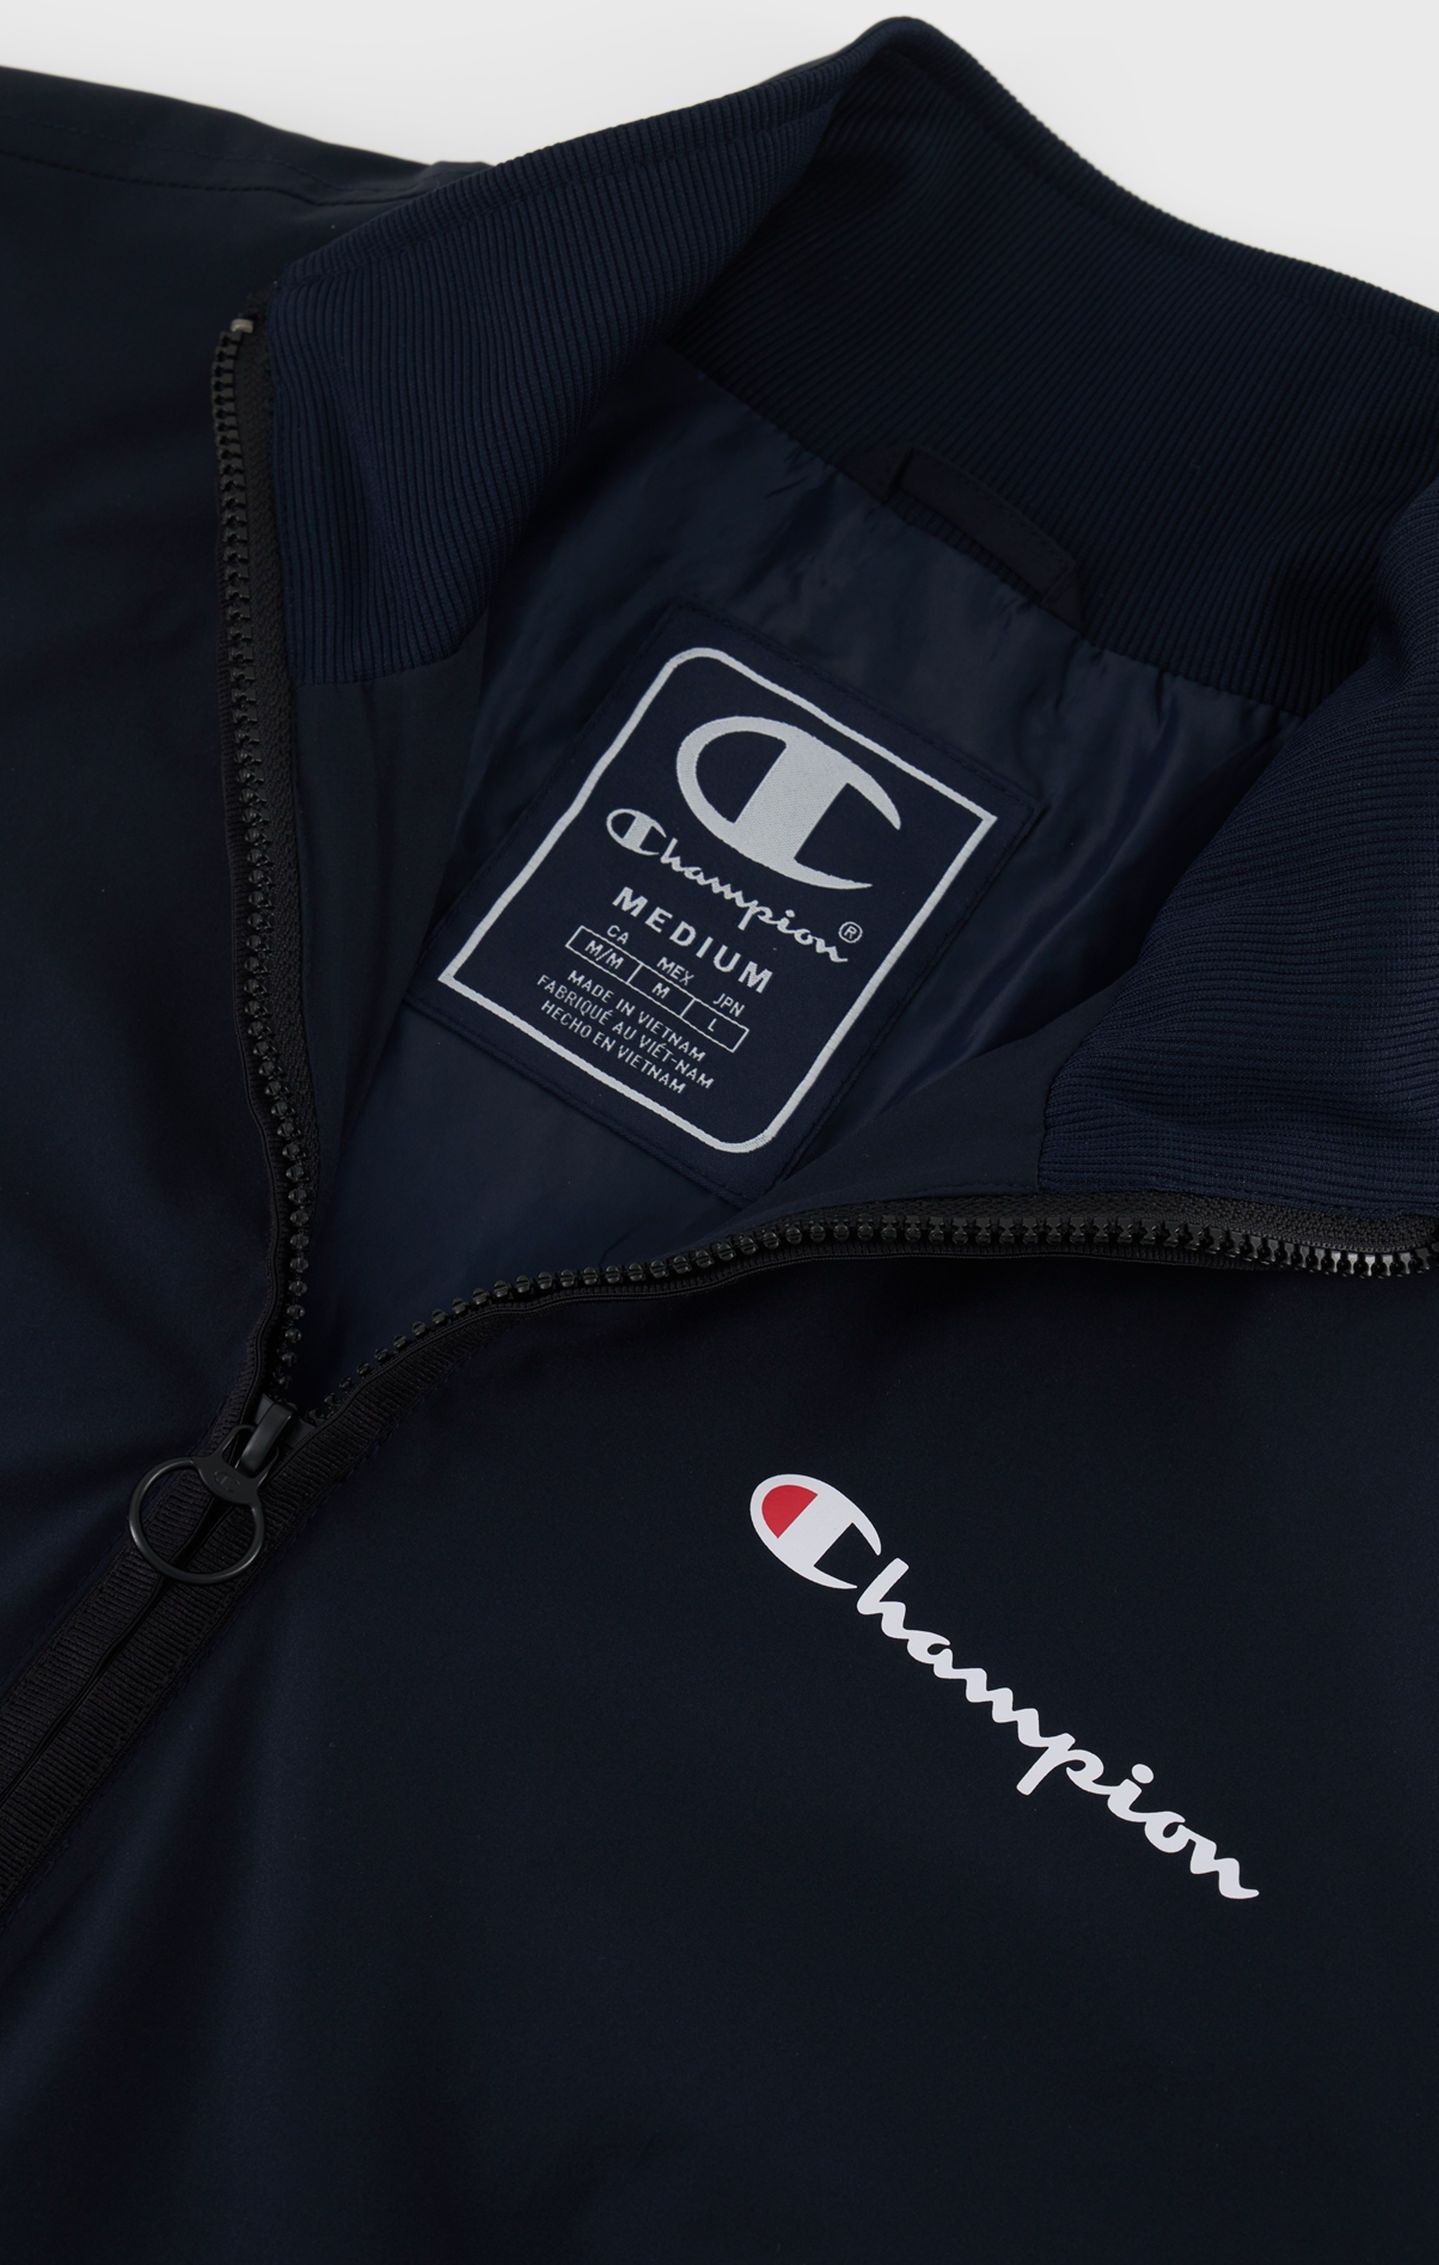 Champion Leichte Retro Jacke mit Champion-Logo in schwarz 